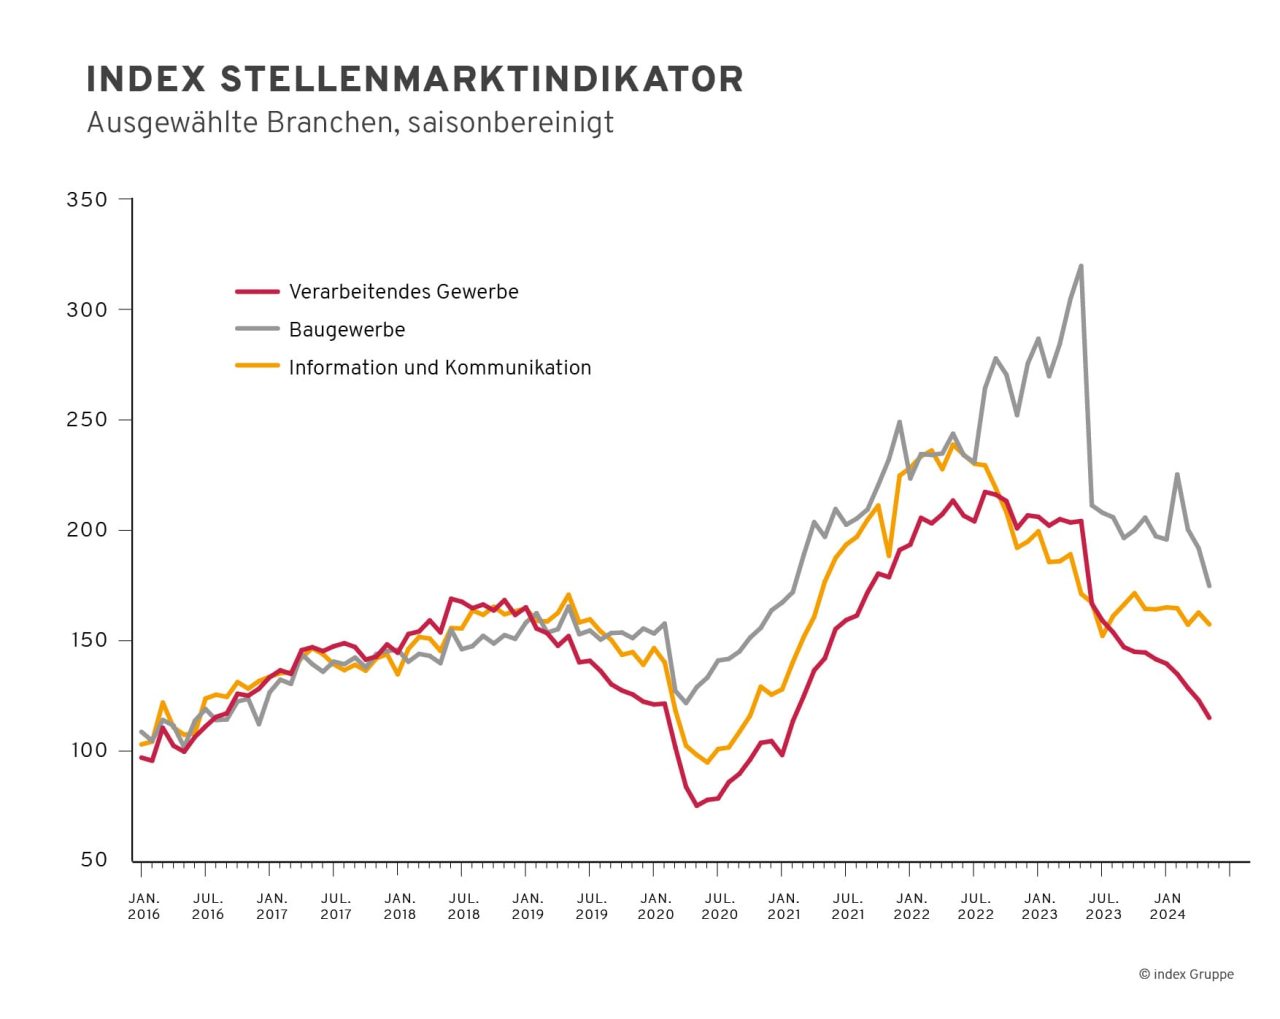 saisonbereinigter index Stellenmarktindikator für ausgewählte Branchen in Deuschland